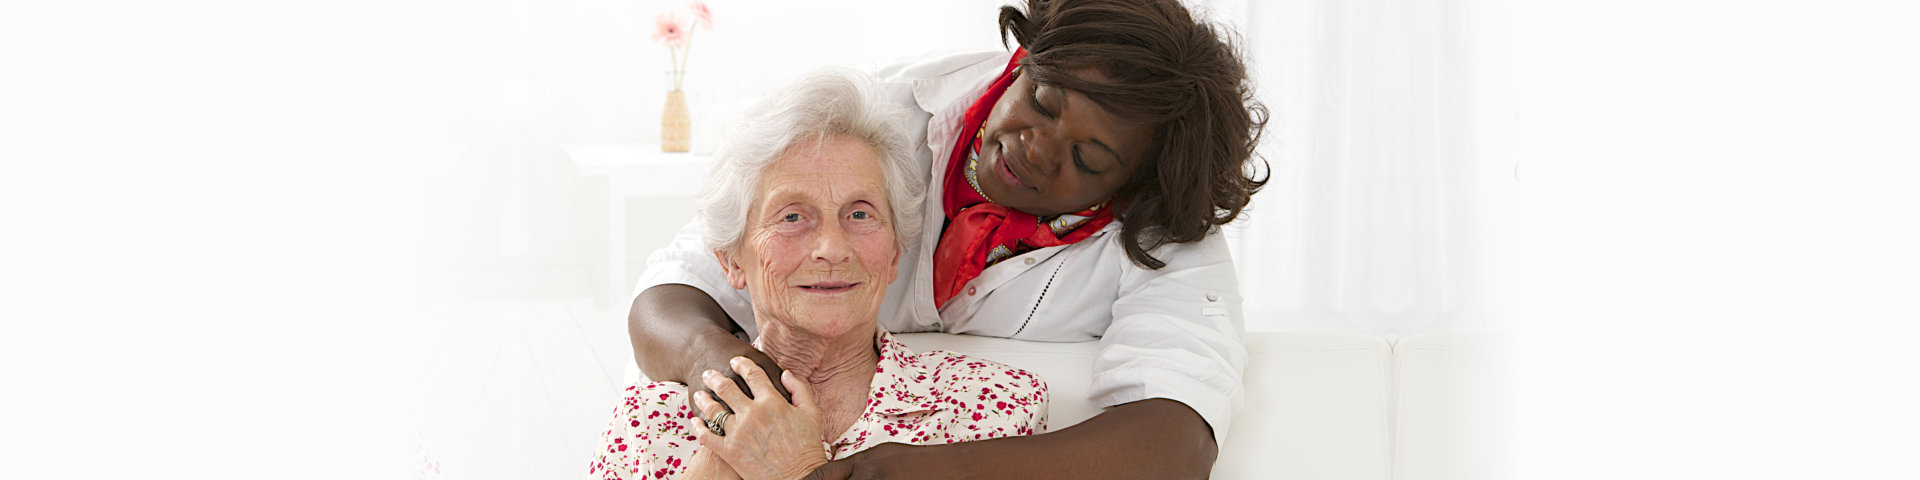 caregiver hugging the elder lady